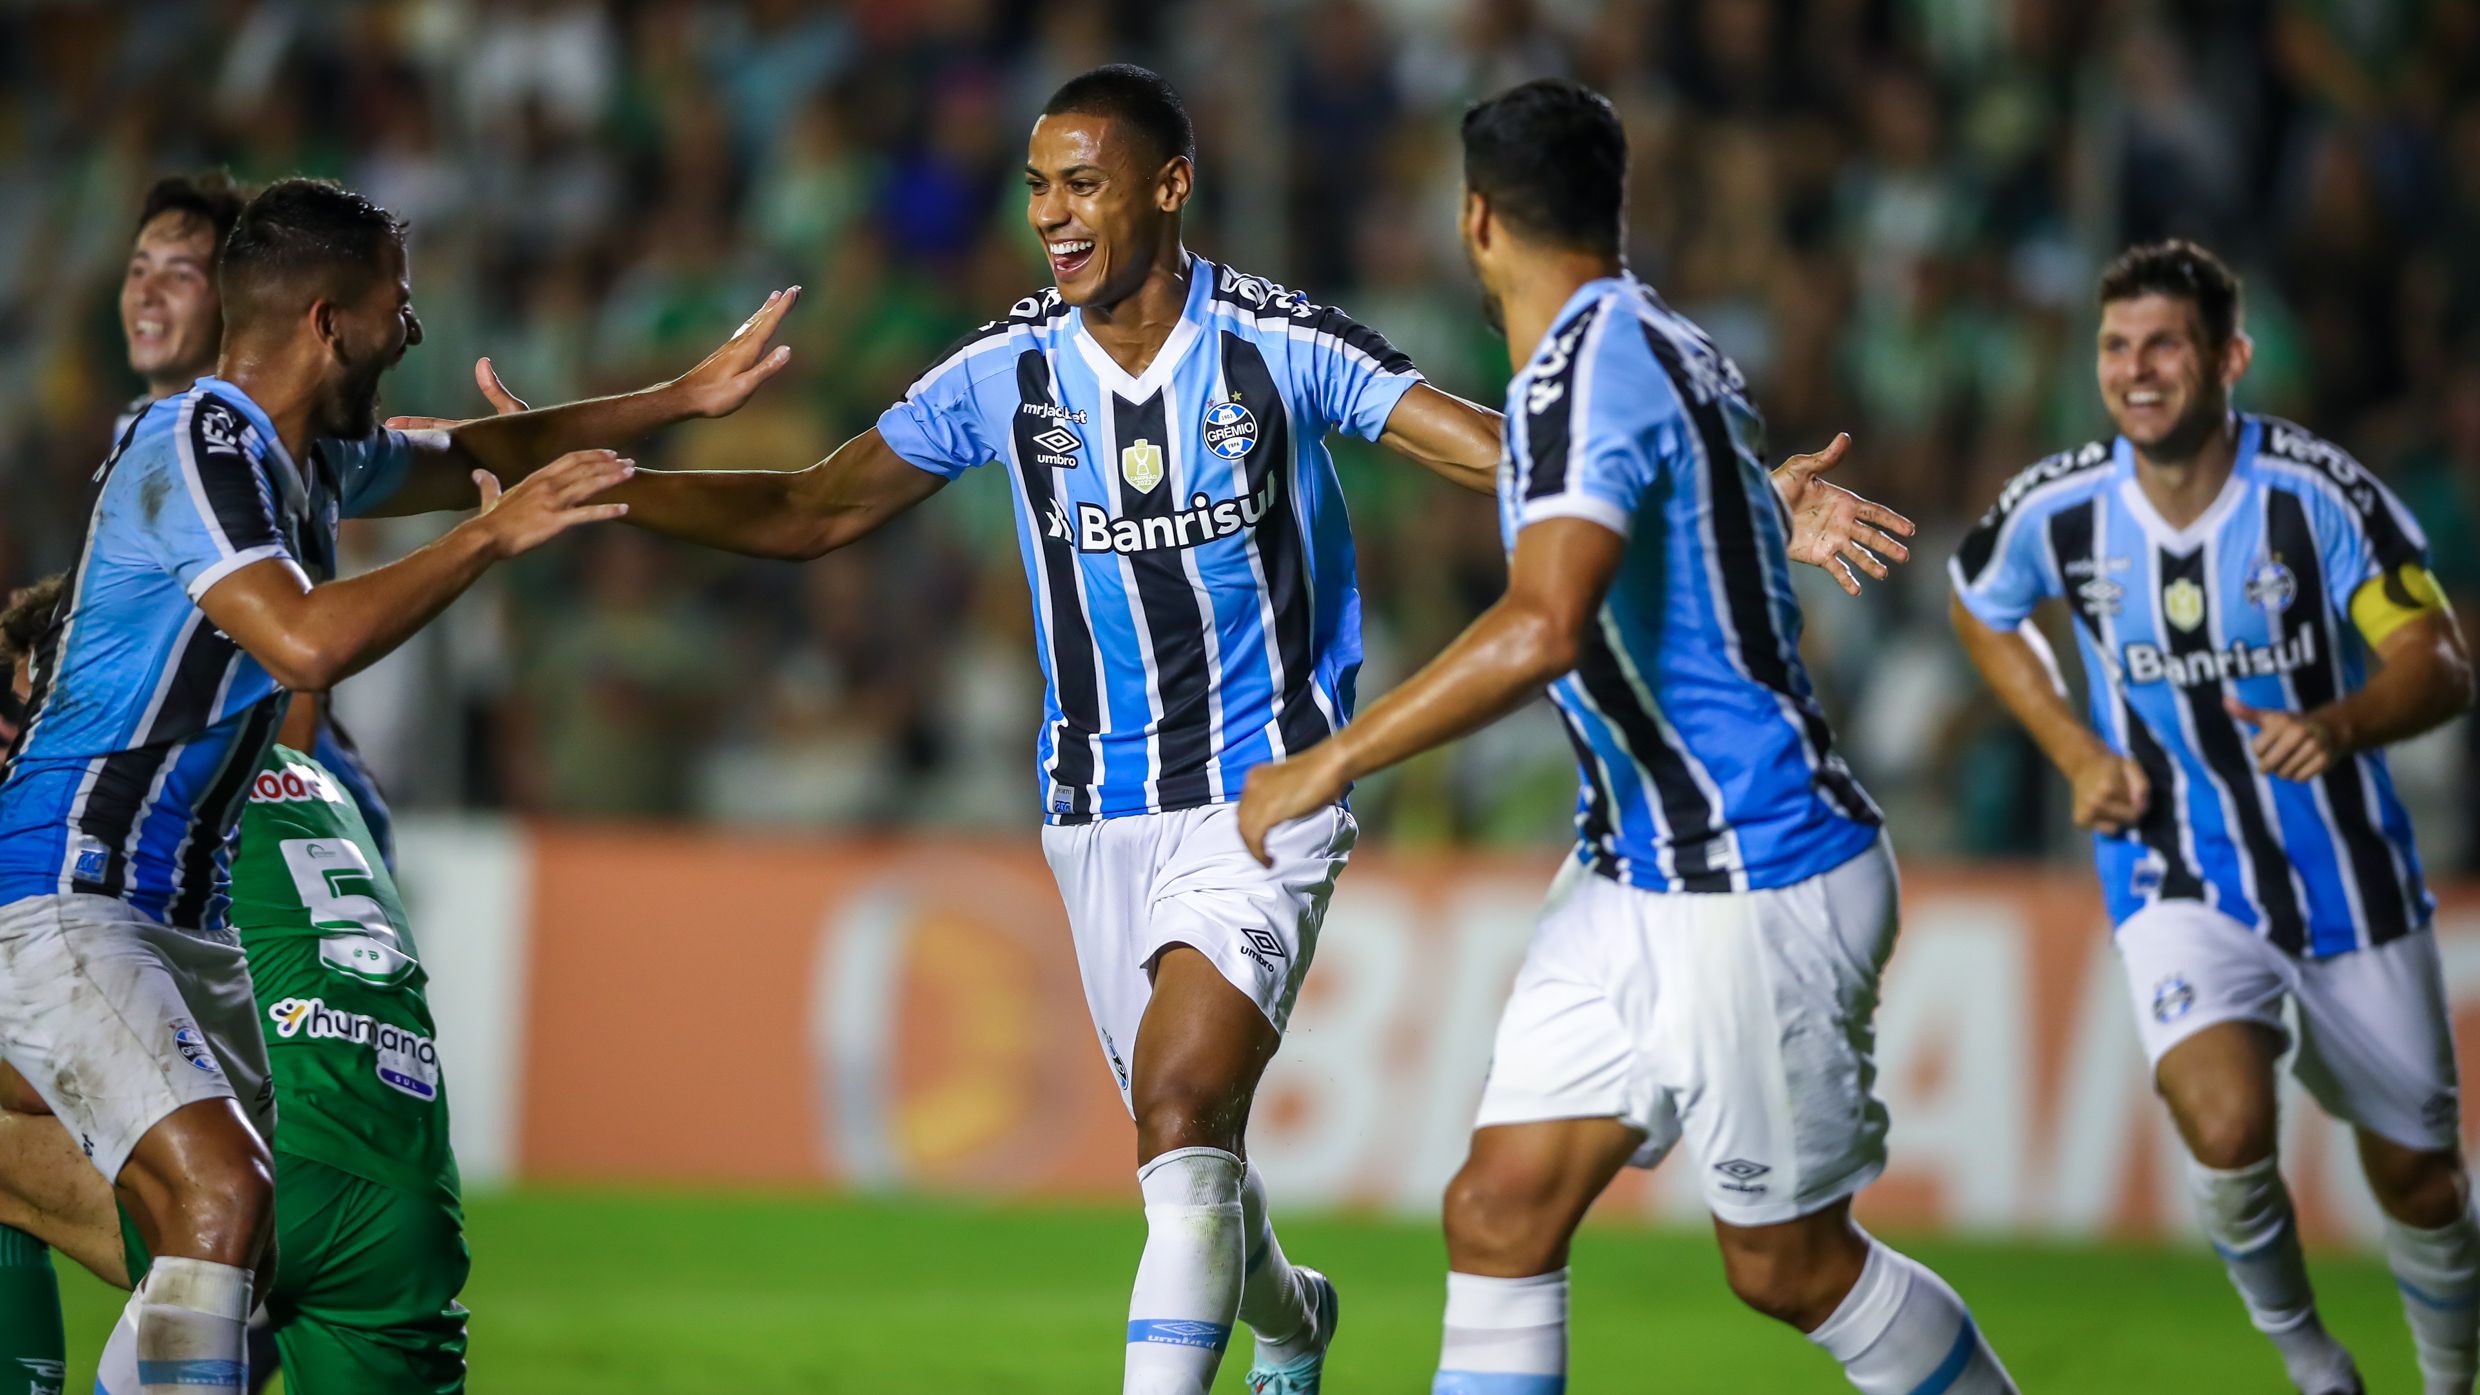 Grêmio X Ituano: História, Estatísticas e Expectativas